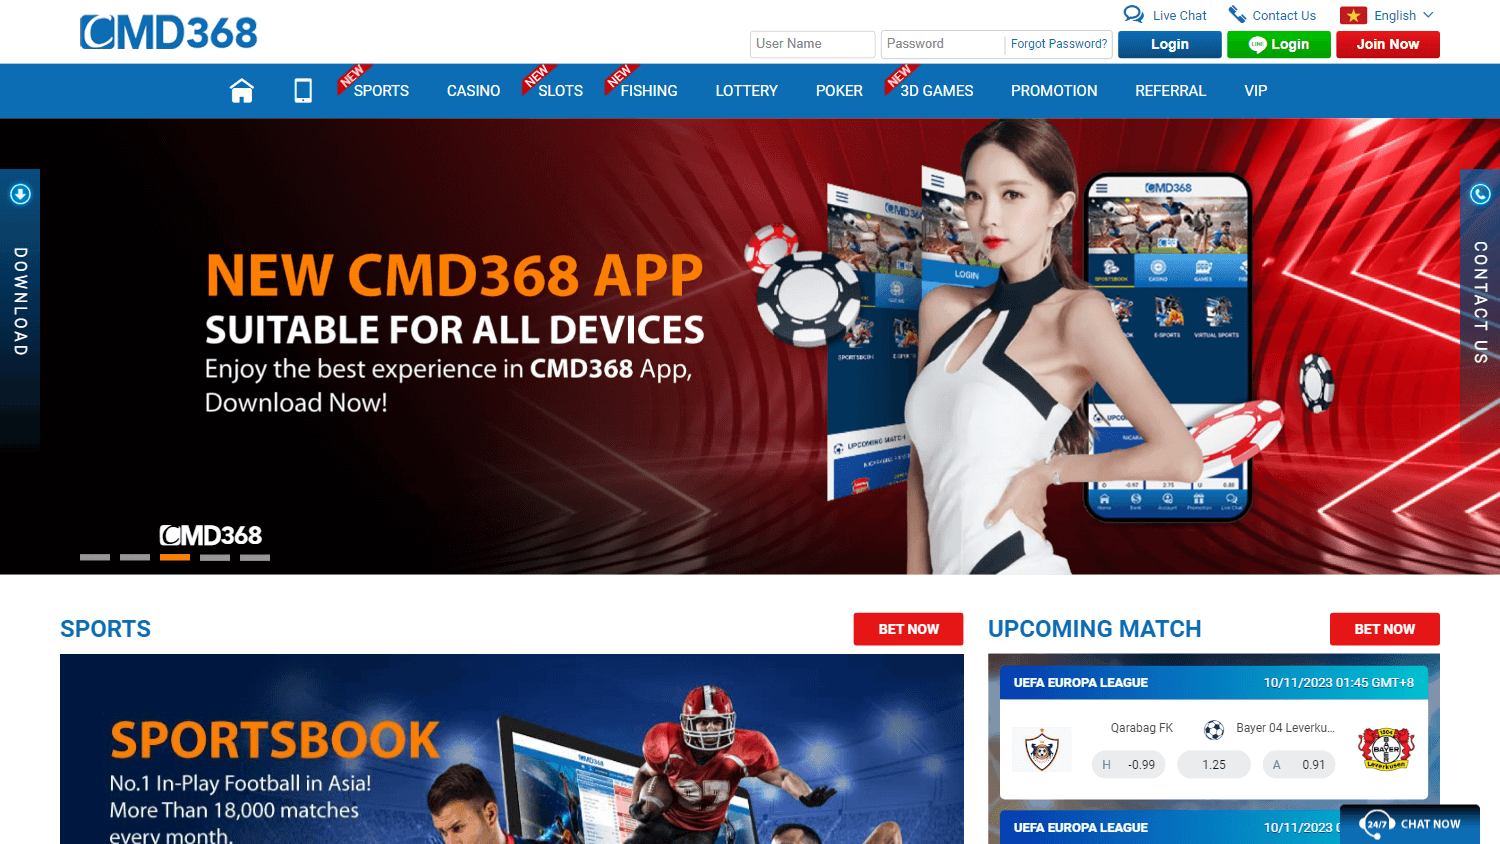 cmd368_casino_homepage_desktop